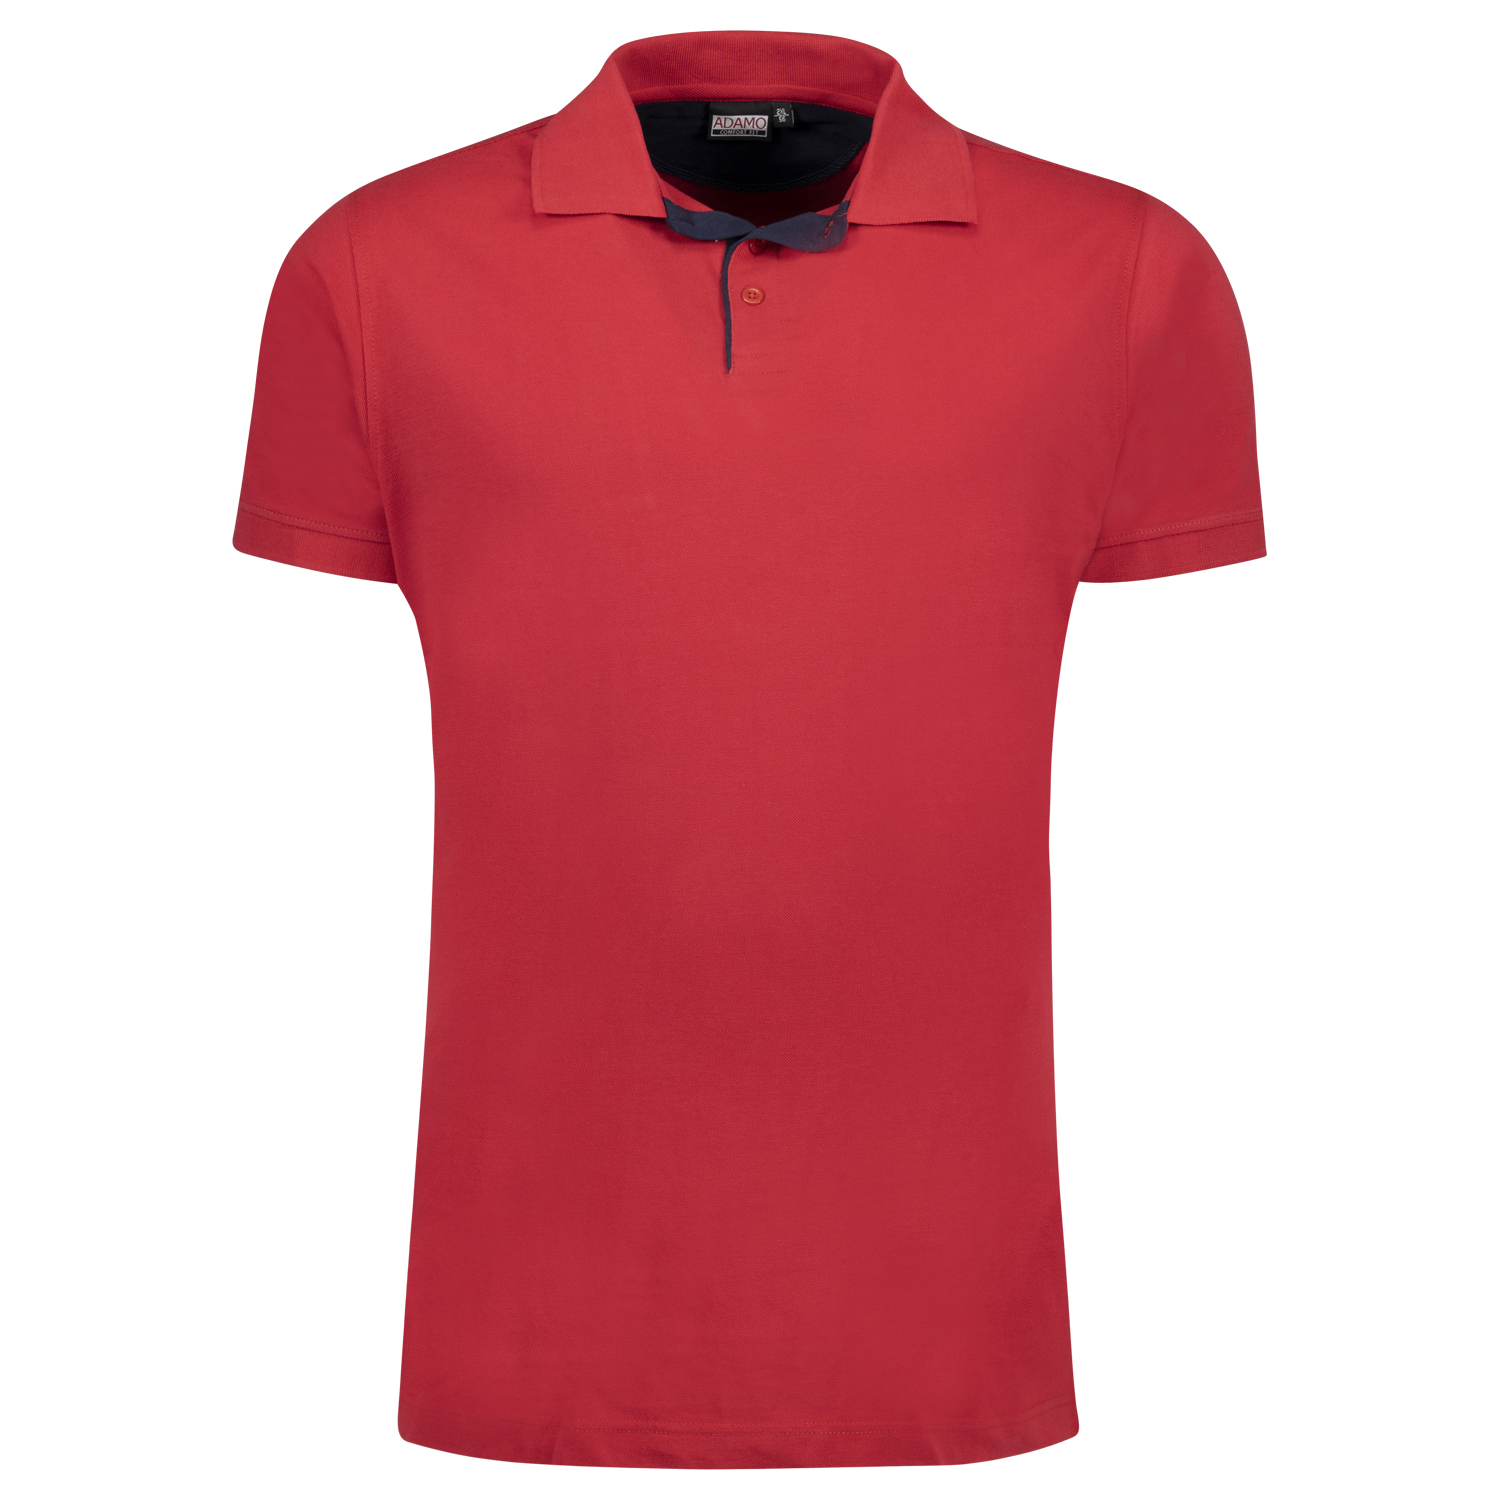 Poloshirt Herren kurzarm in Pique-Qualität Serie Pablo COMFORT FIT von Adamo in rot bis Übergröße 12XL